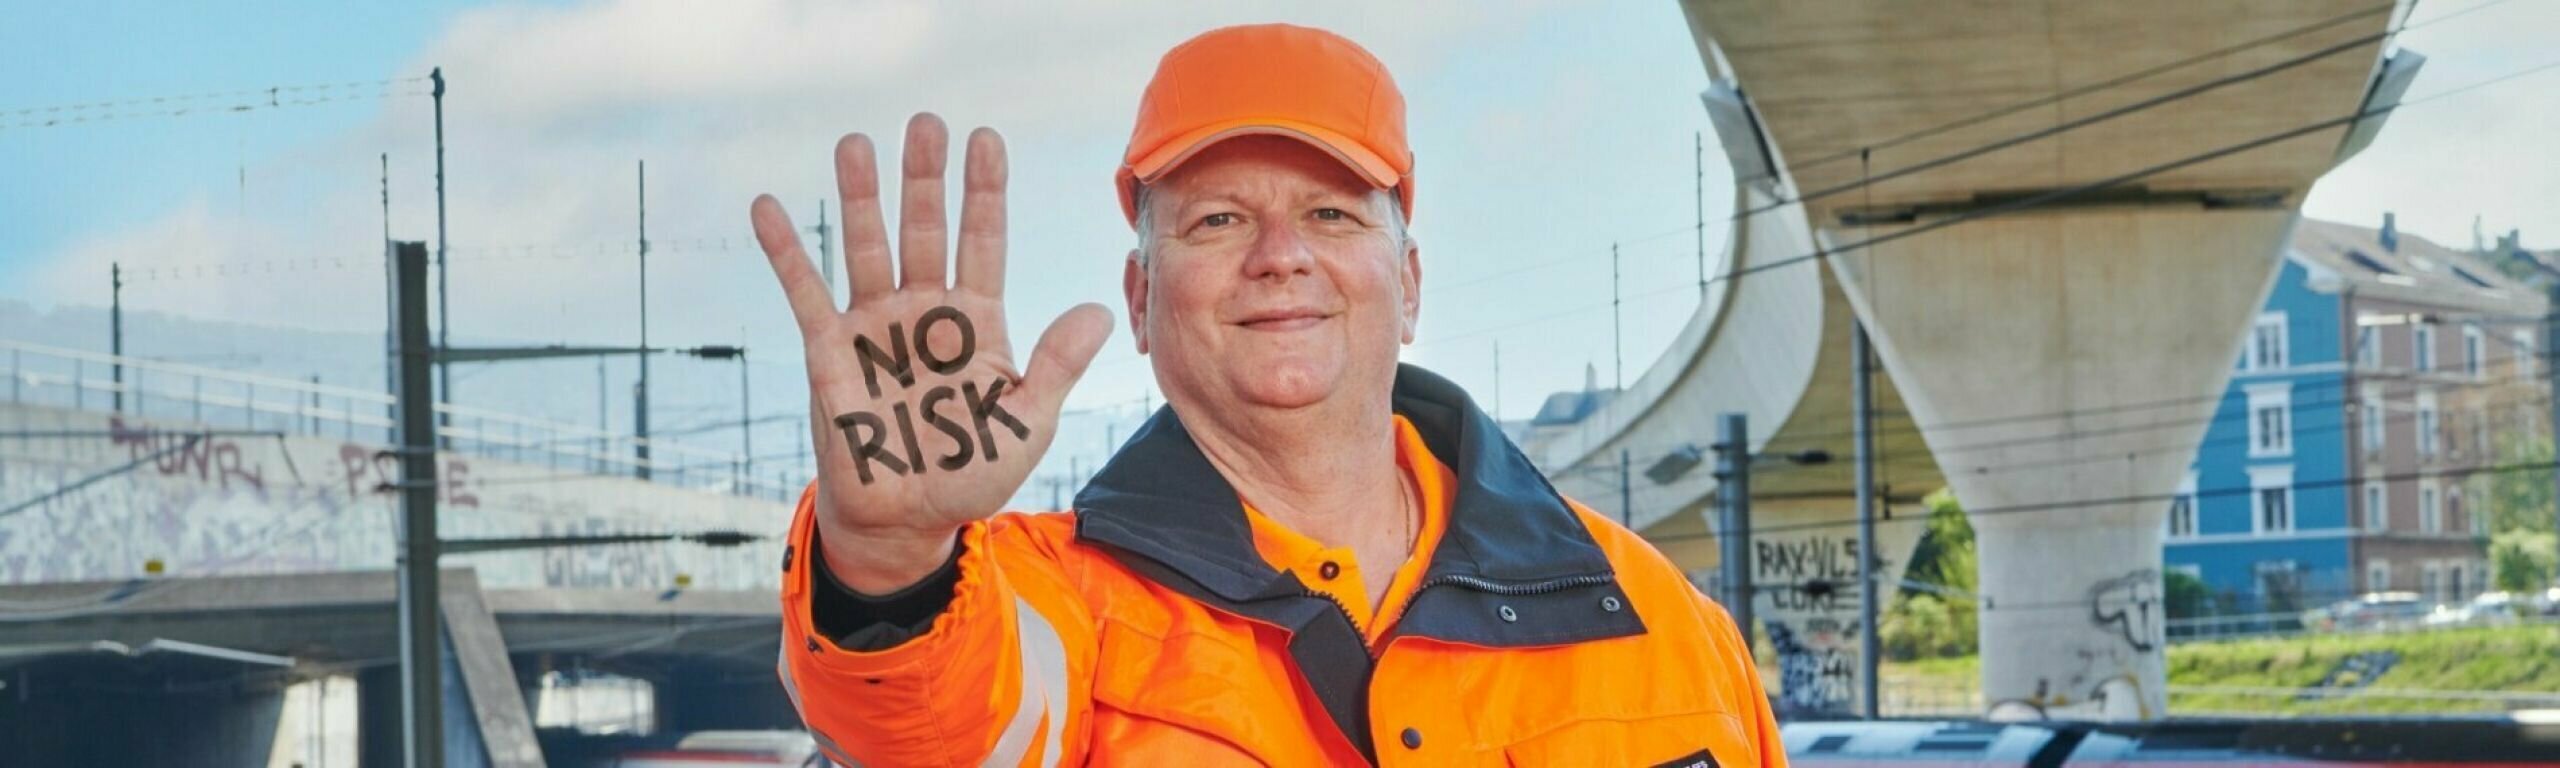 Mann in Arbeitskleidung streckt Hand aus mit der Aufschrift "No Risk"